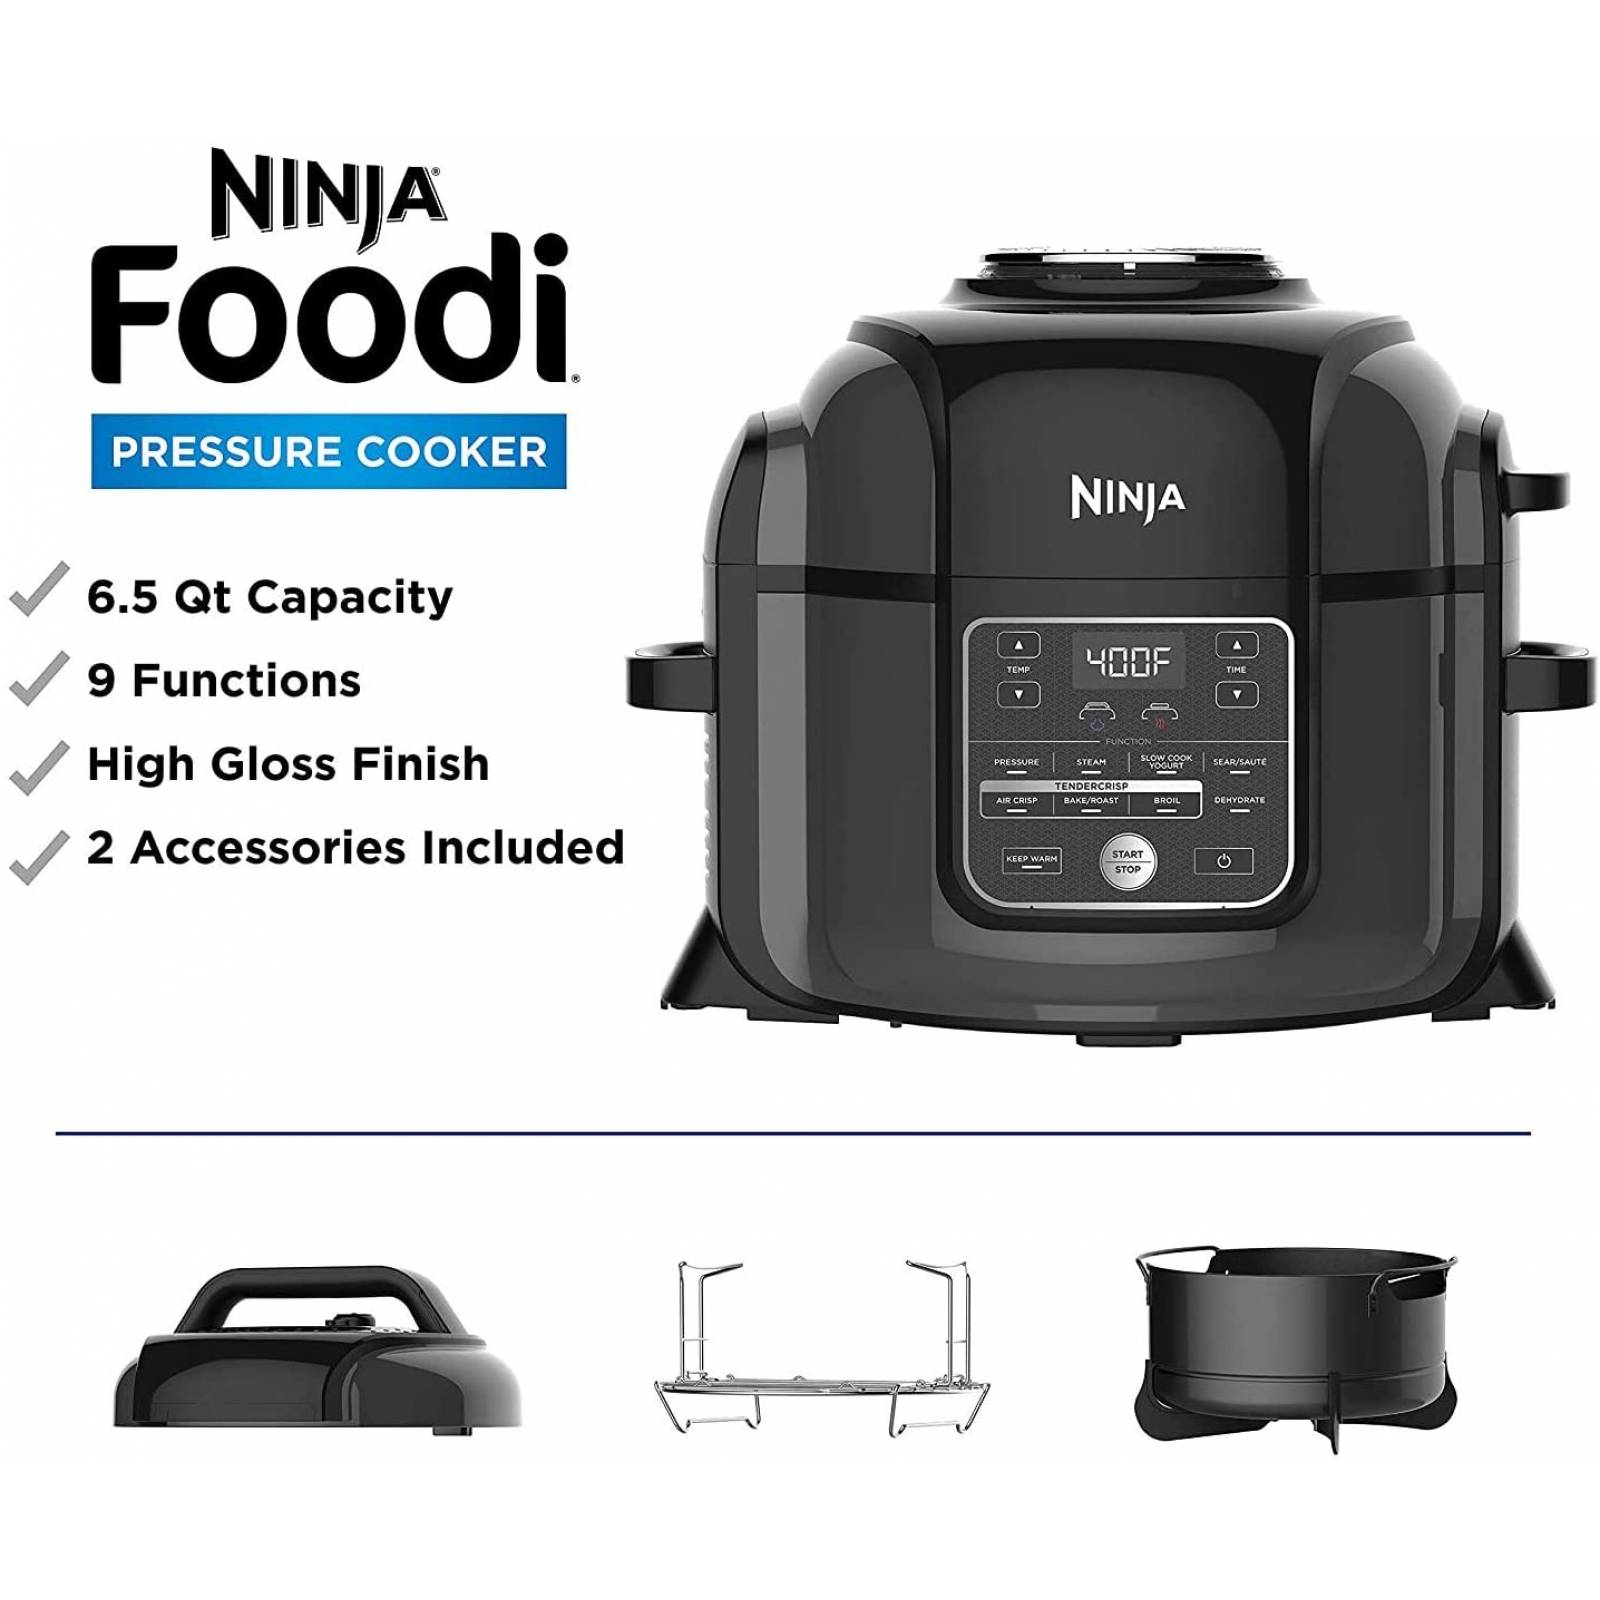 Ninja foodi 9 en 1 funciones de asar freir hornear rostizar deshidratar y mas capacidad de 6.5qt temperatura ajustable (Reacondicionado)